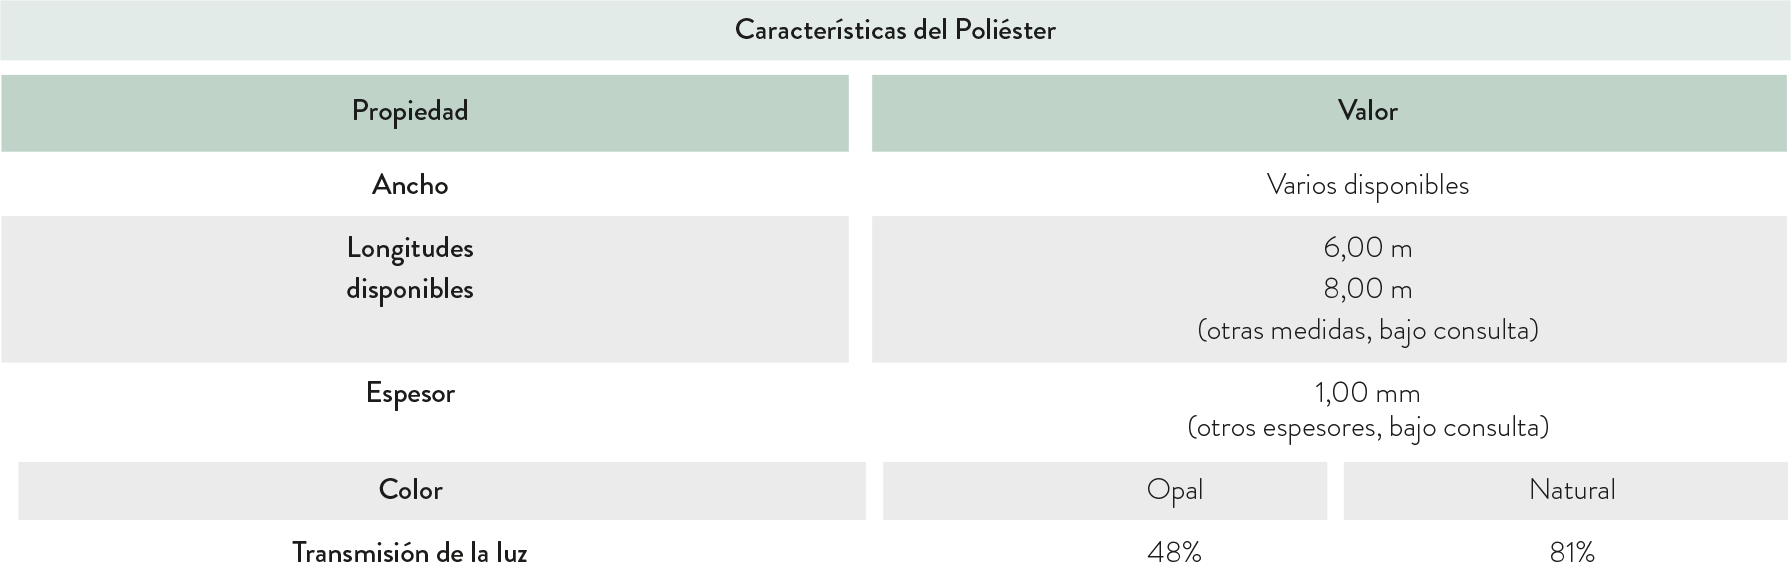 tabla caracteristicas poliester 2